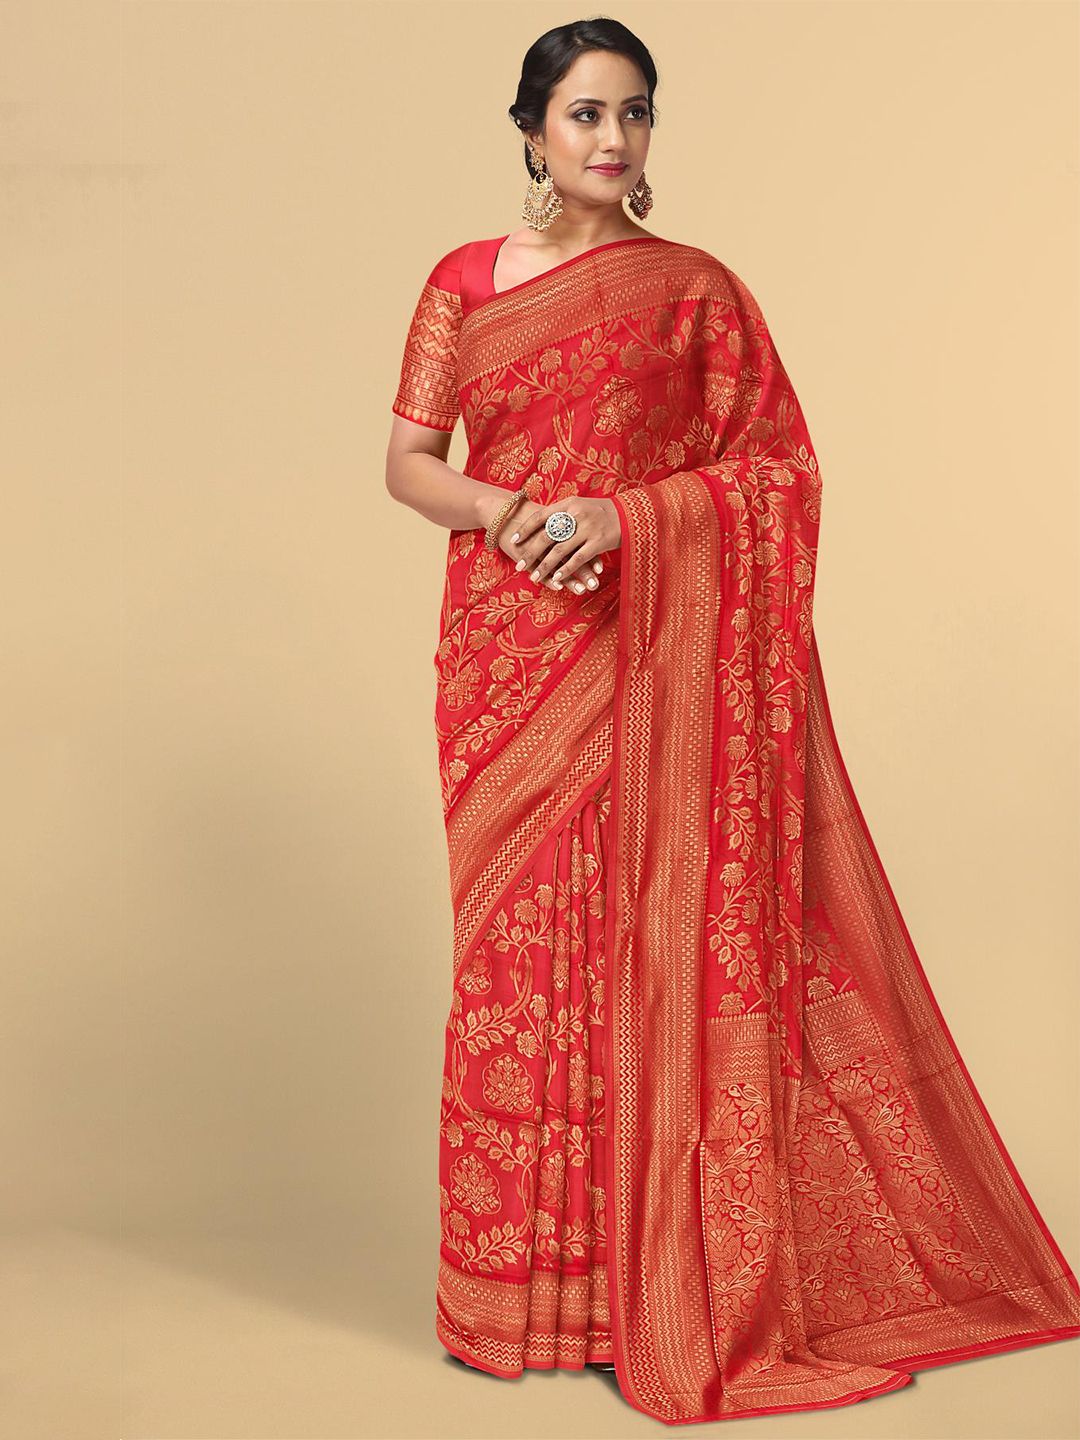 Kalamandir Red Floral Silk Blend Saree Price in India